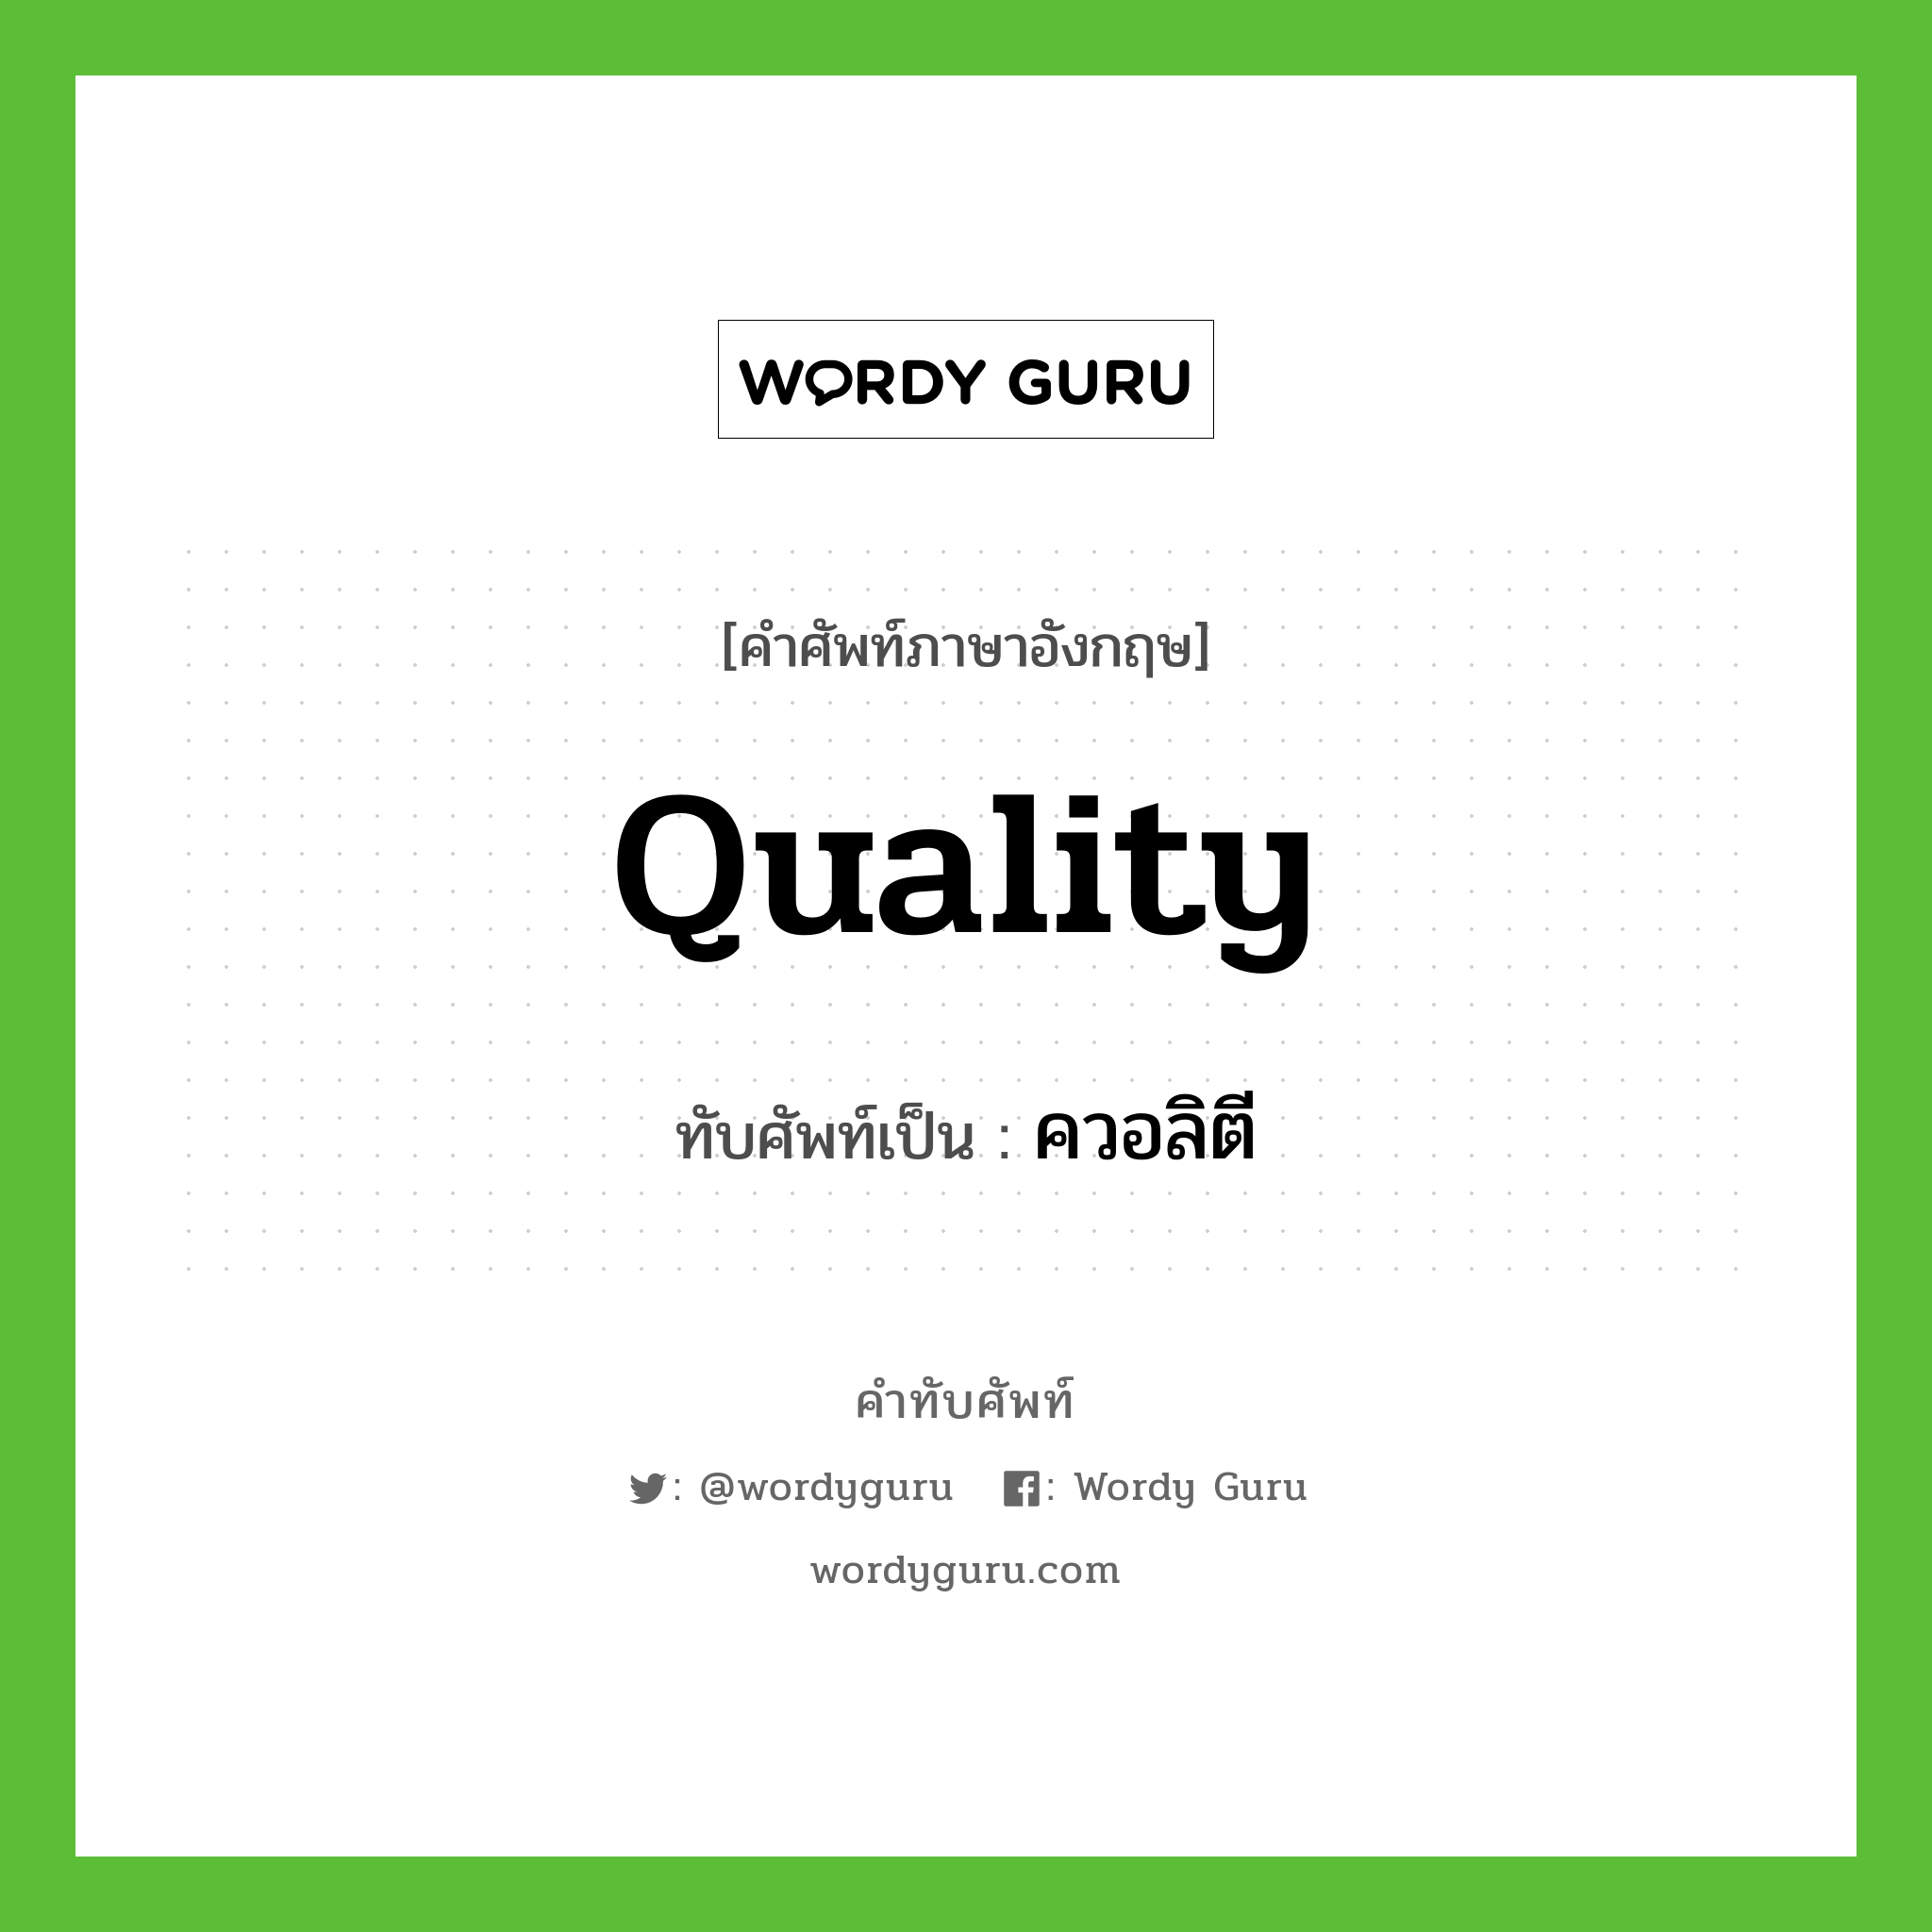 quality เขียนเป็นคำไทยว่าอะไร?, คำศัพท์ภาษาอังกฤษ quality ทับศัพท์เป็น ควอลิตี